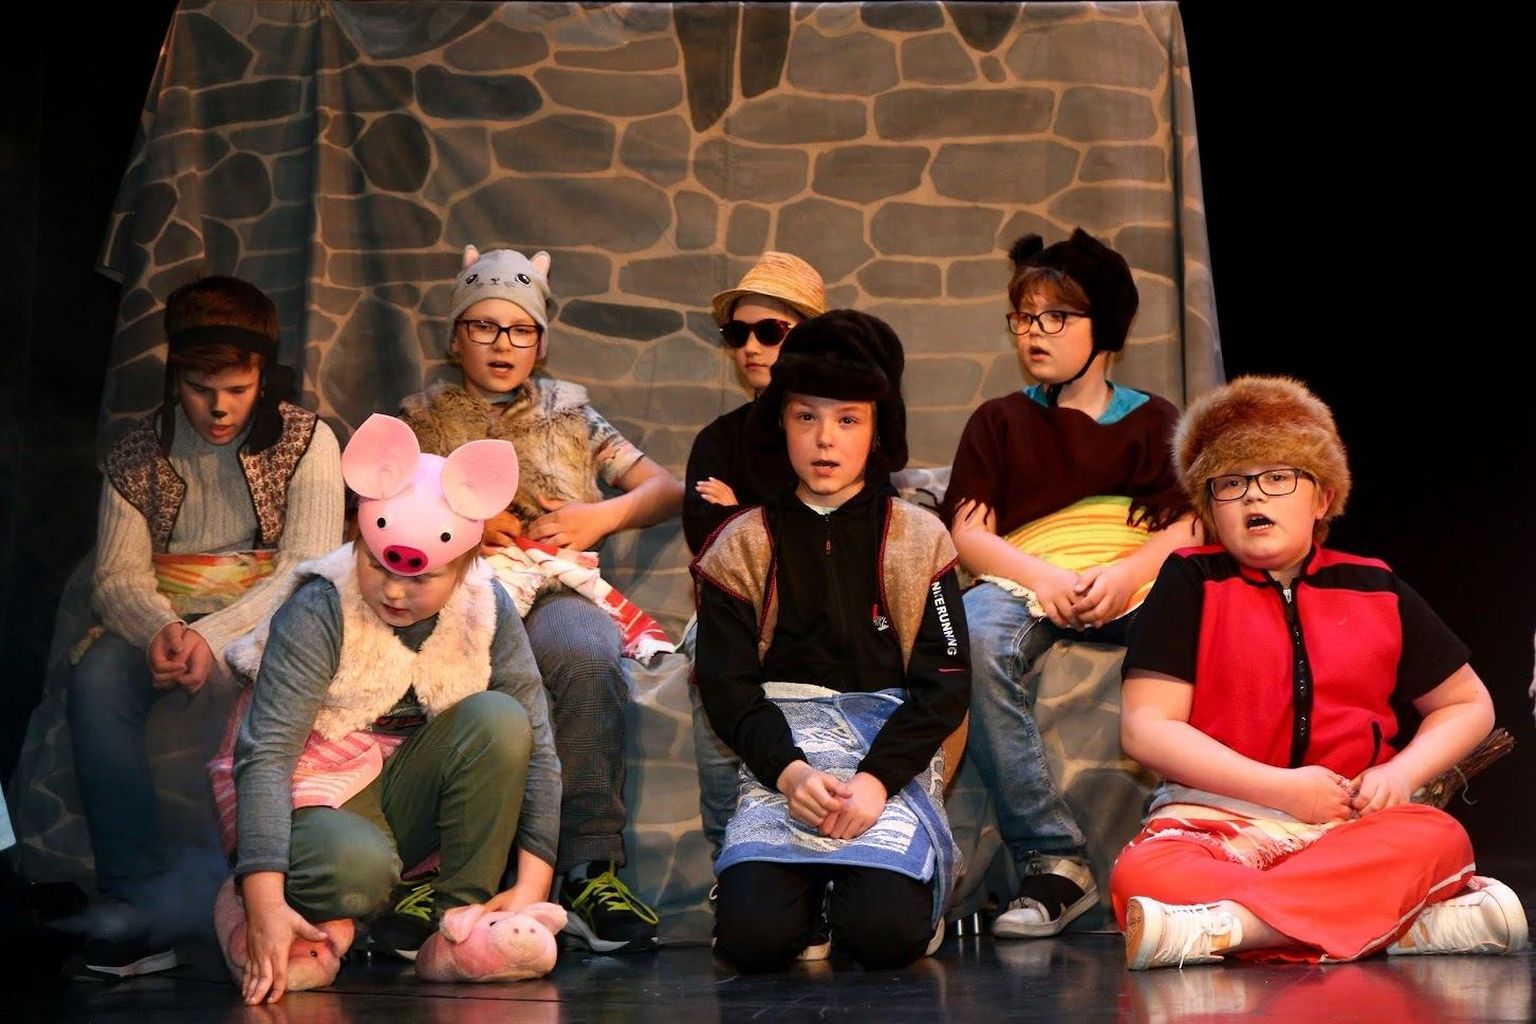 Vohnja lasteaed-algkooli lapsed tõid lavale õpetliku näidendi "Lotte".